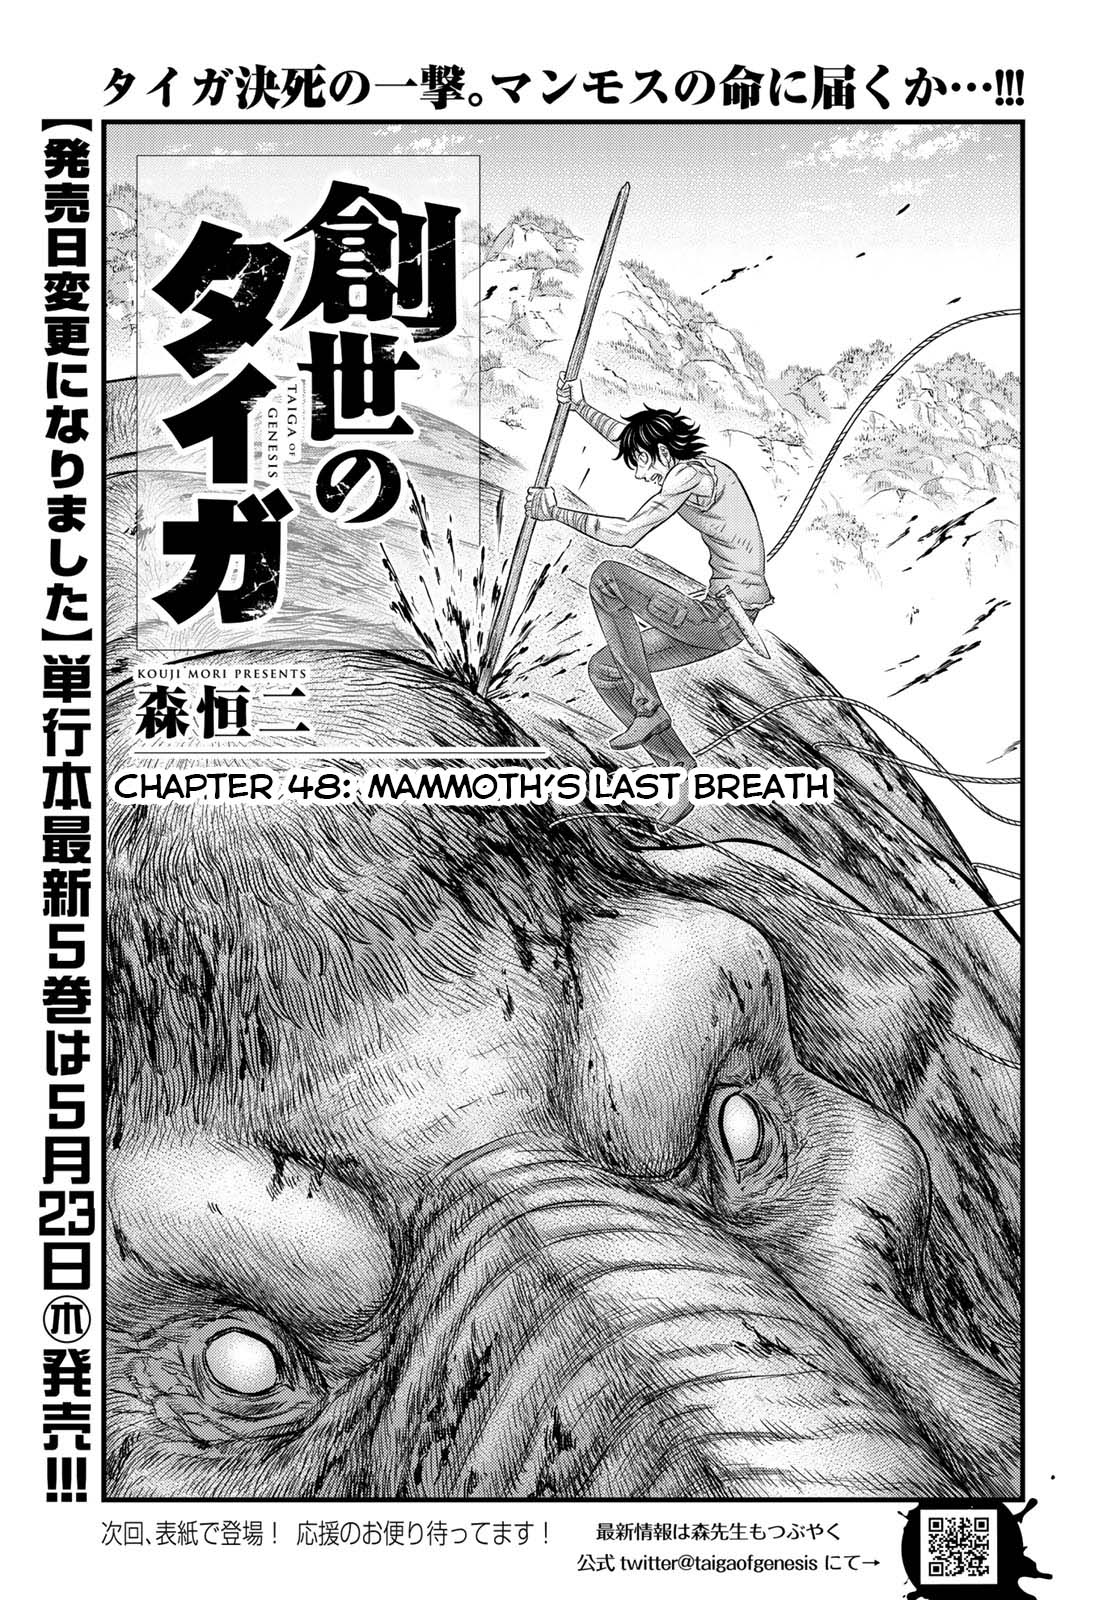 Sousei no Taiga Vol. 6 Ch. 48 Mammoth's Last Breath